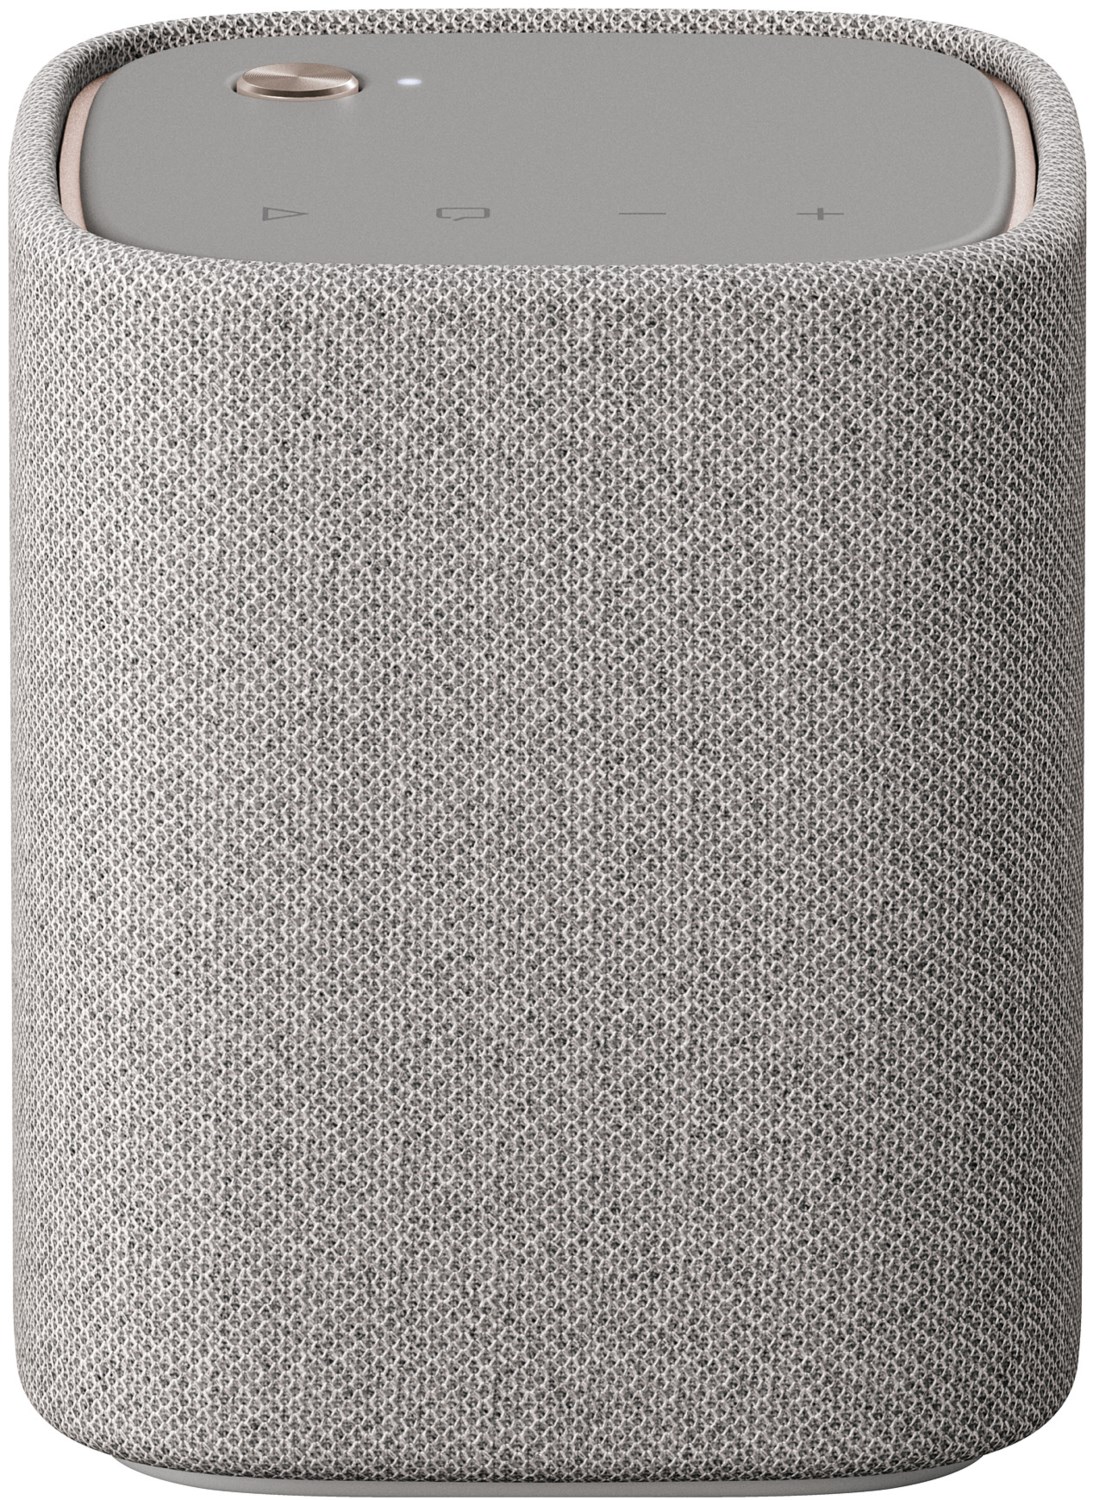 Yamaha WS-B1A drahtloser Bluetooth-Lautsprecher light grey